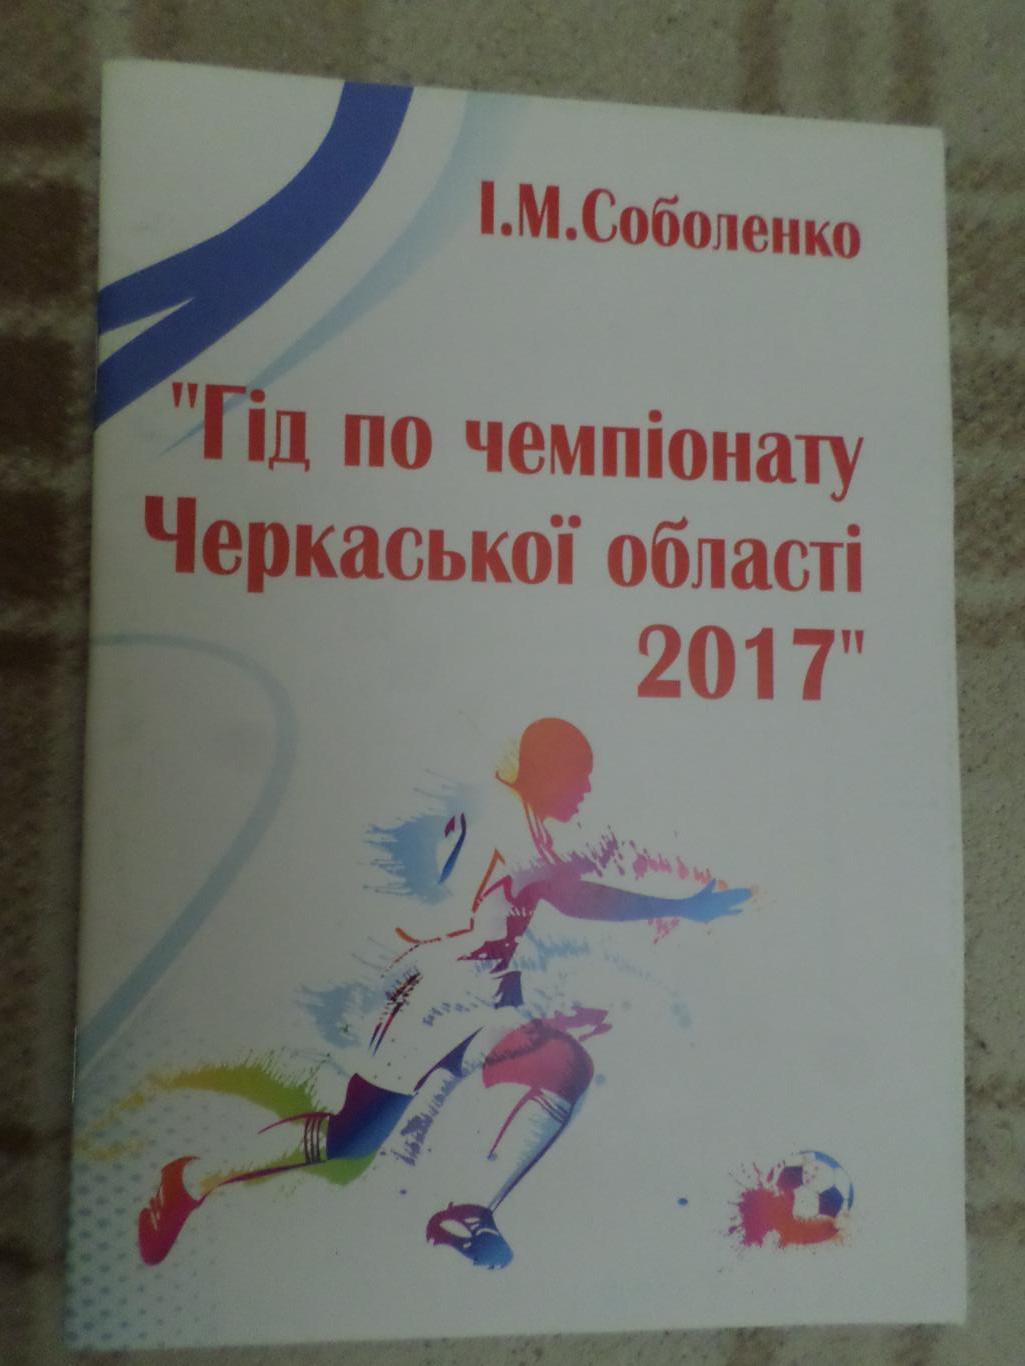 Соболенко - Гид по чемпионату Черкасской области 2017 г